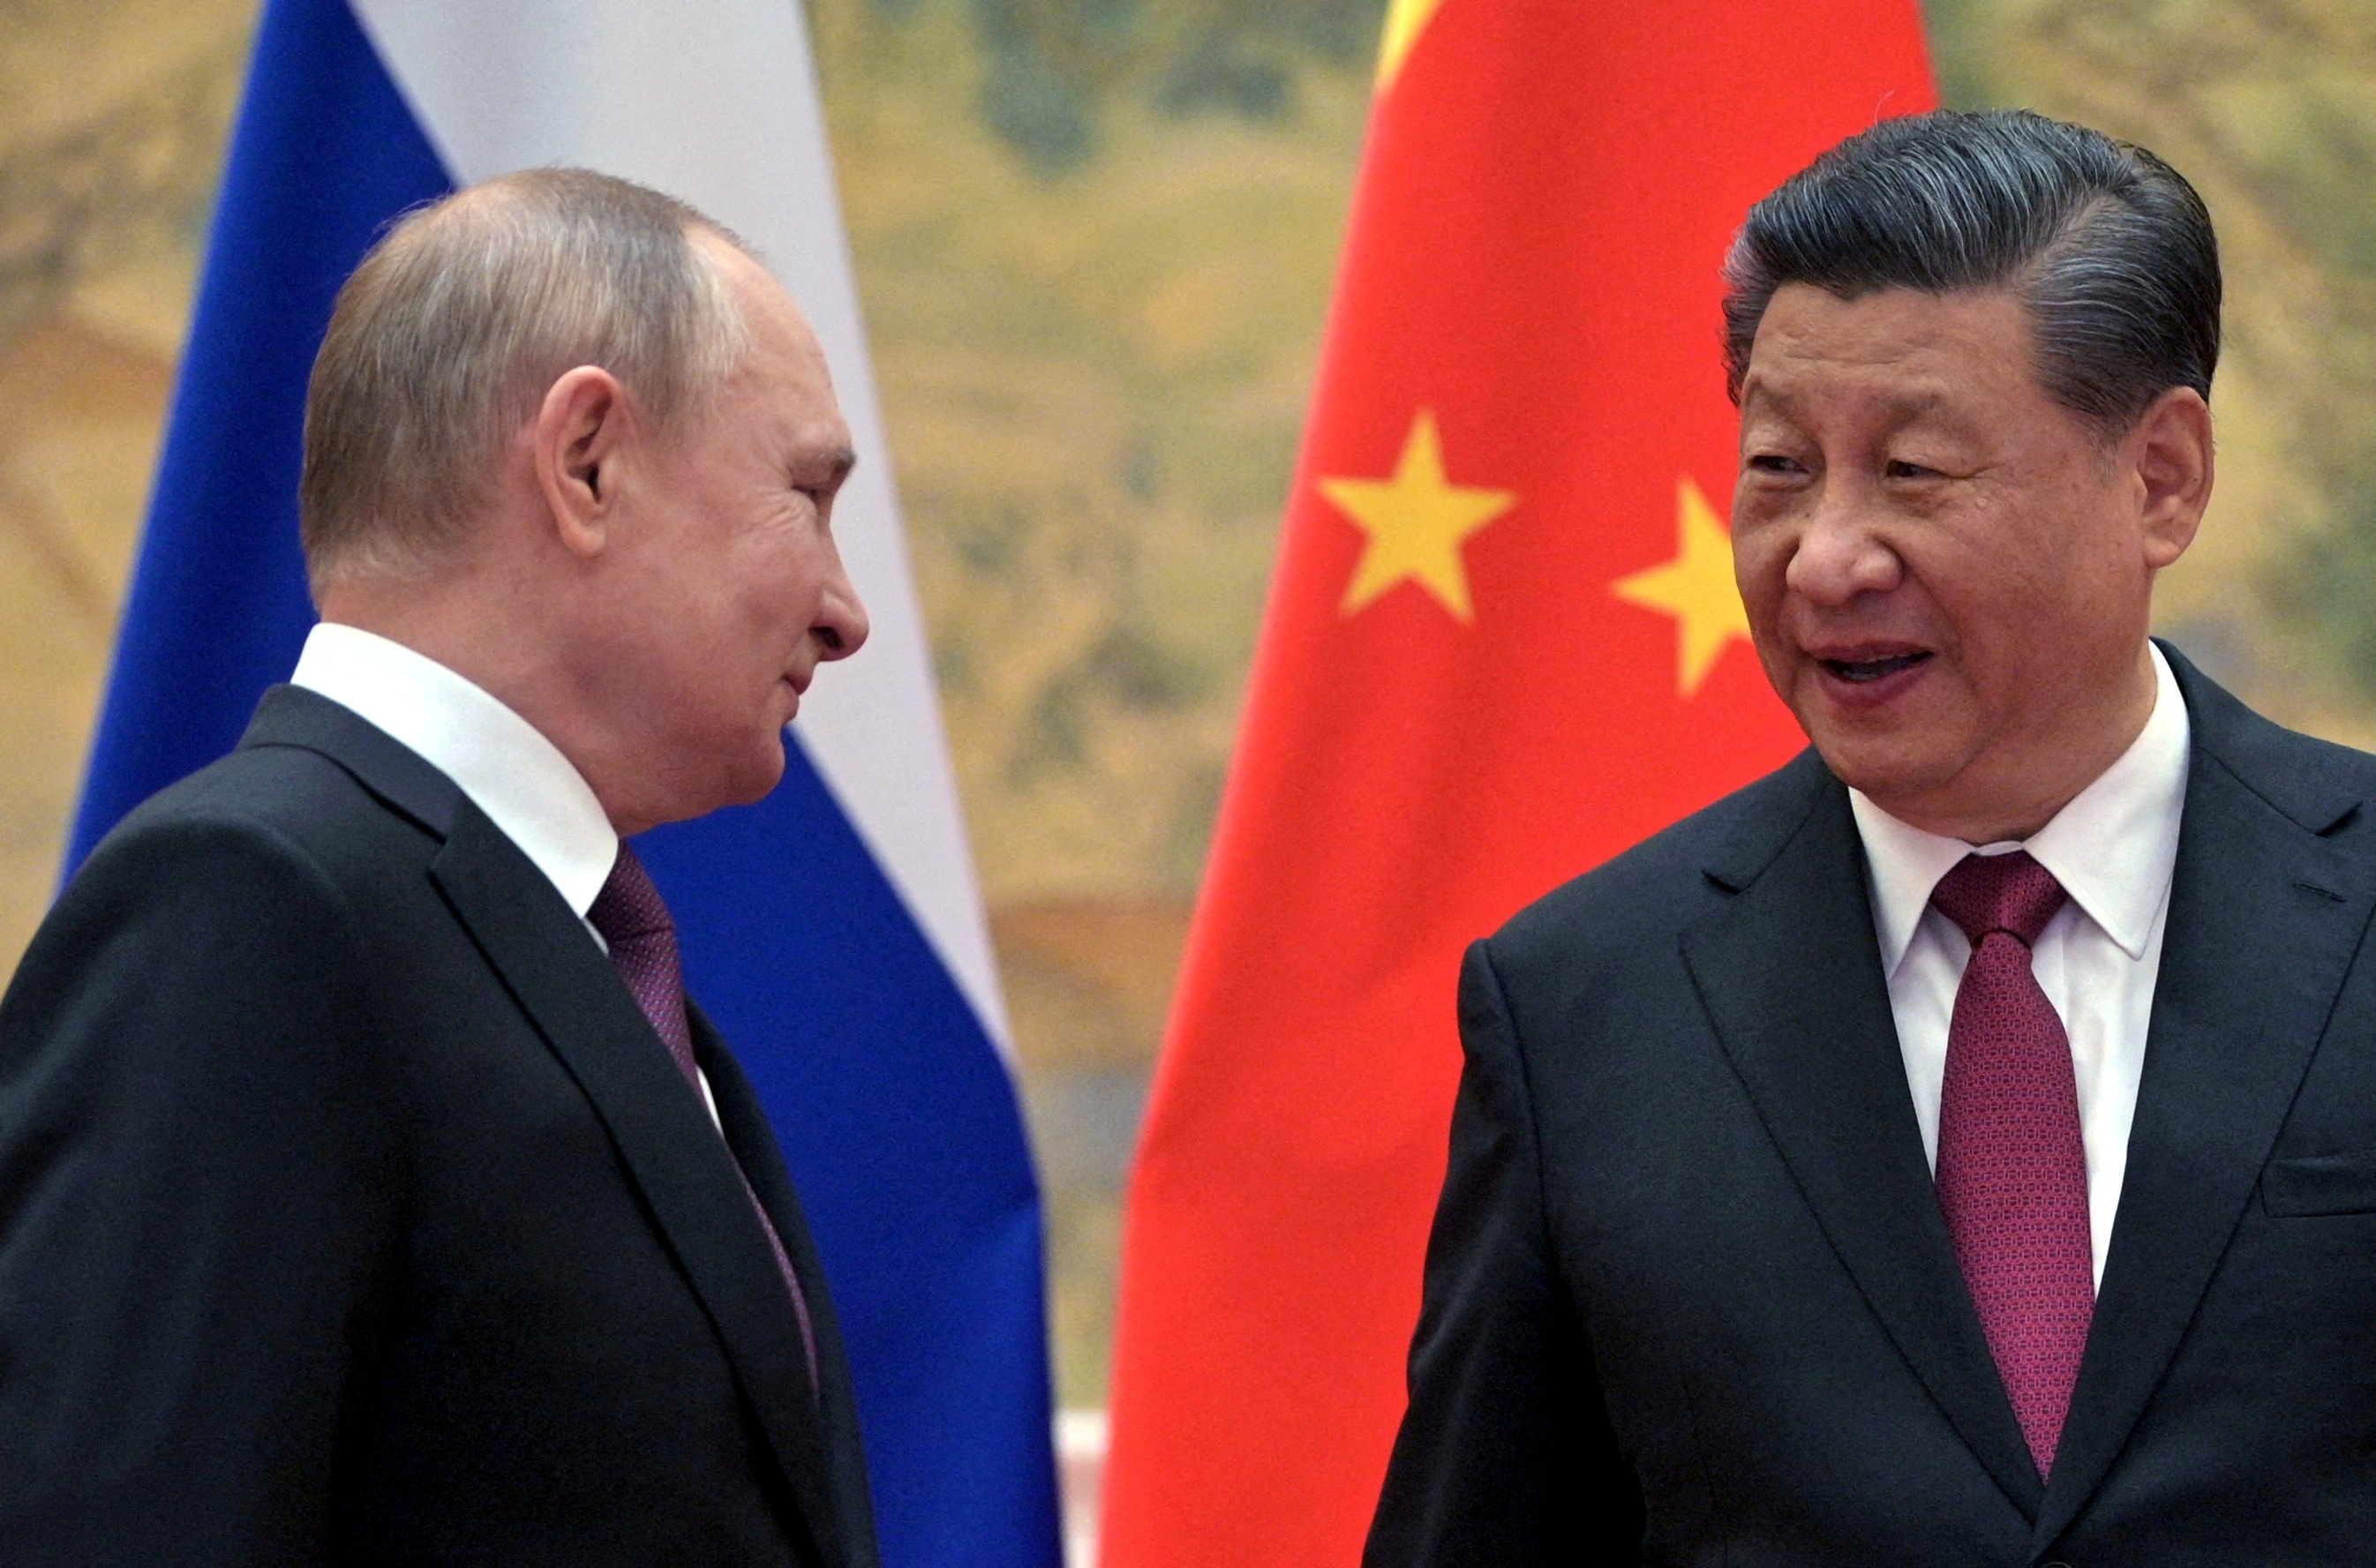 El régimen chino estrecha lazos con Rusia mediante el envío de equipos militares para continuar la guerra en Ucrania (REUTERS)